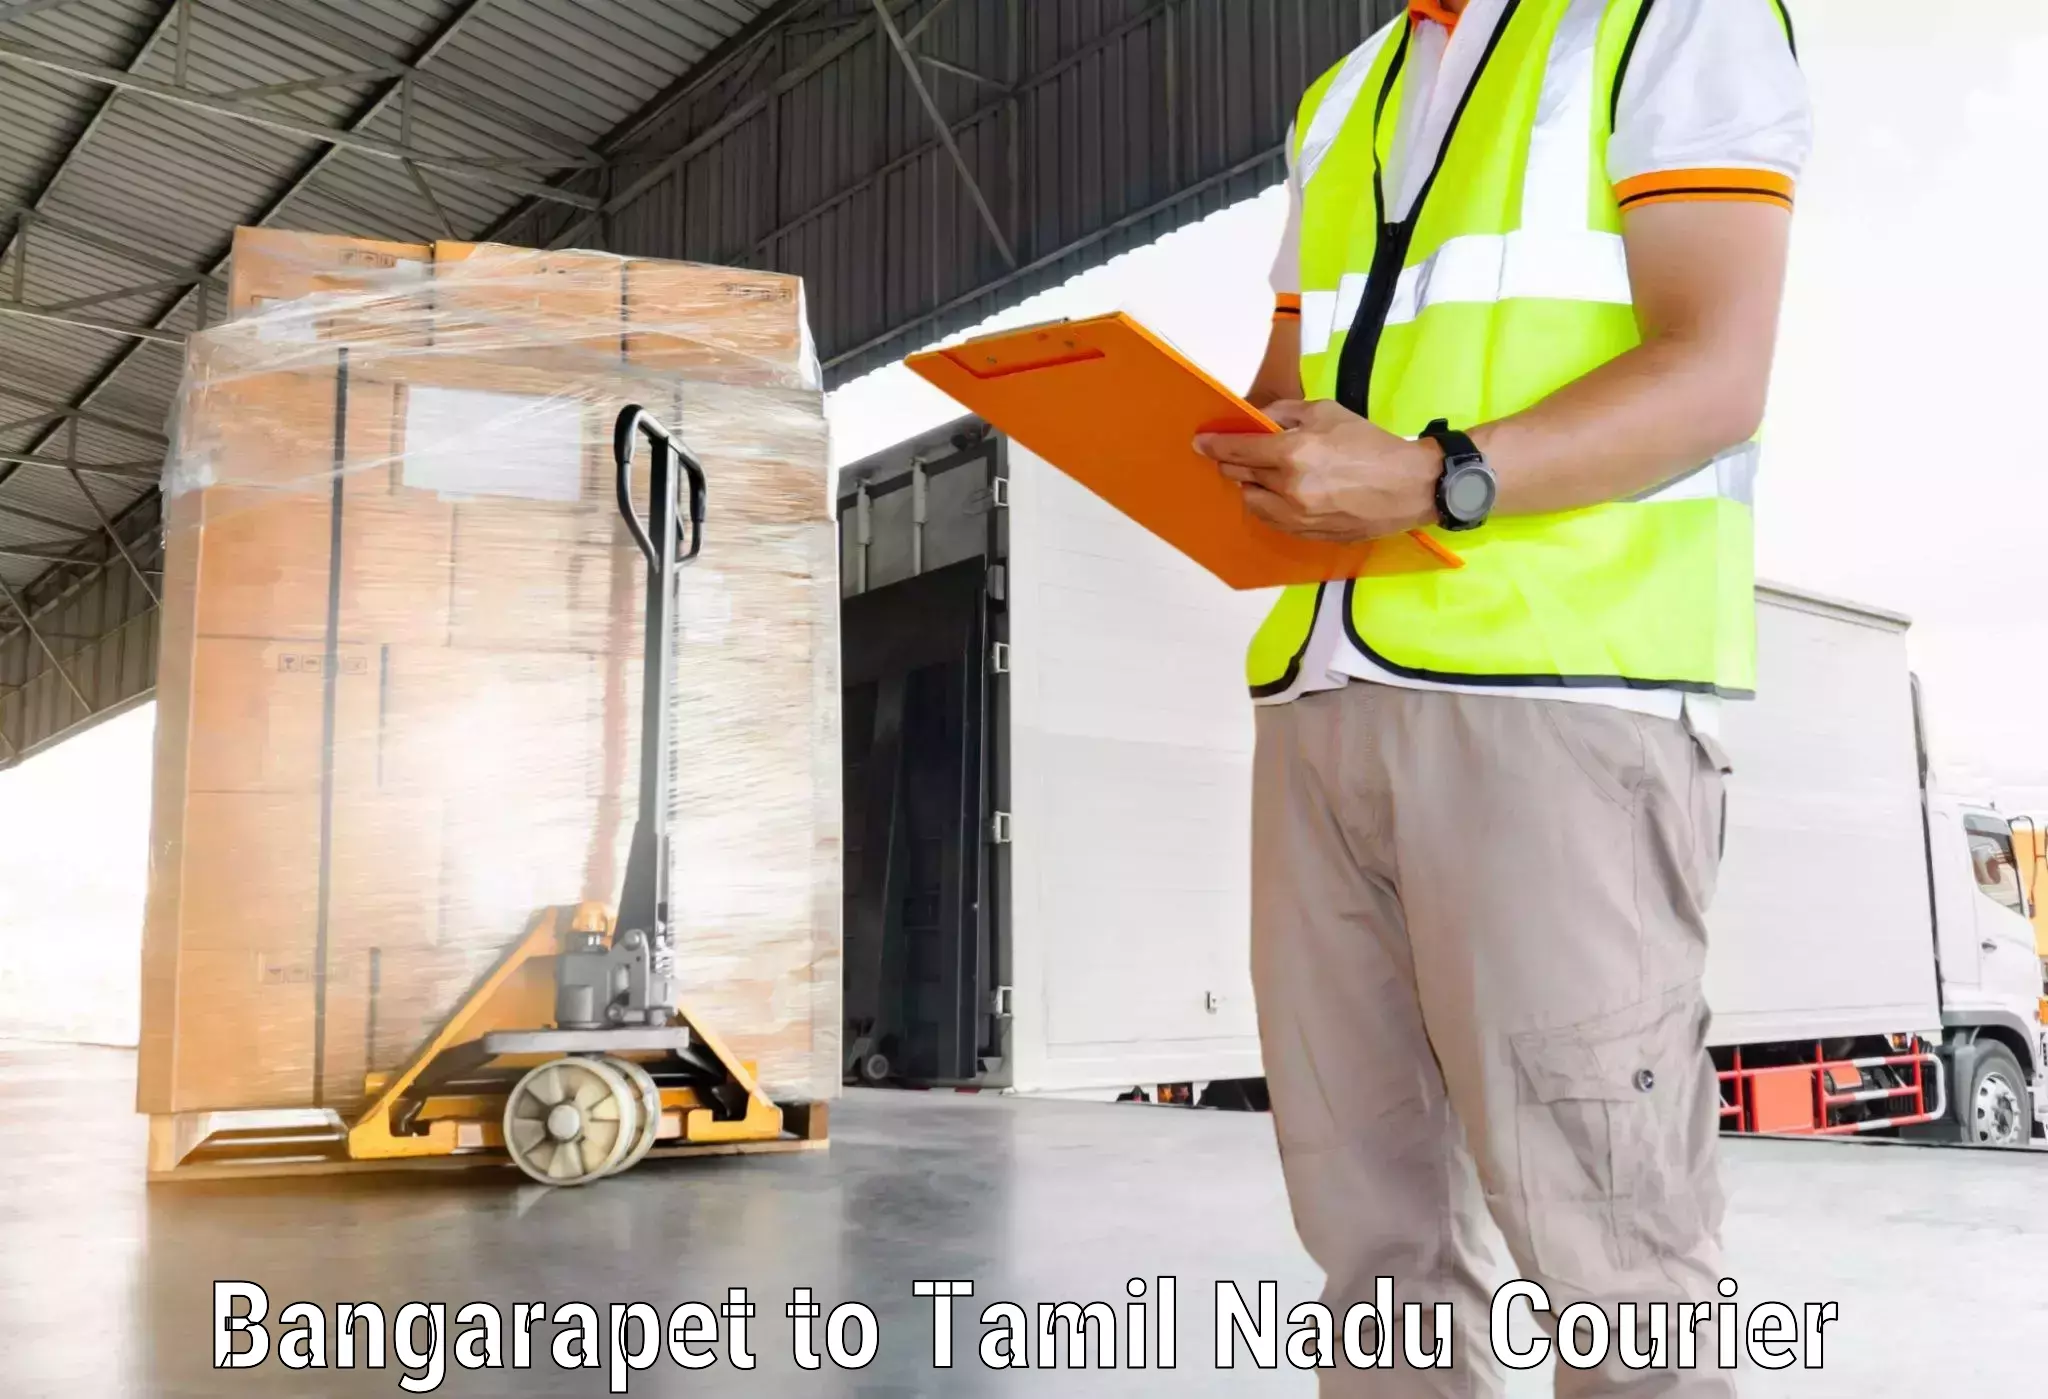 Affordable shipping rates Bangarapet to Thiruvadanai